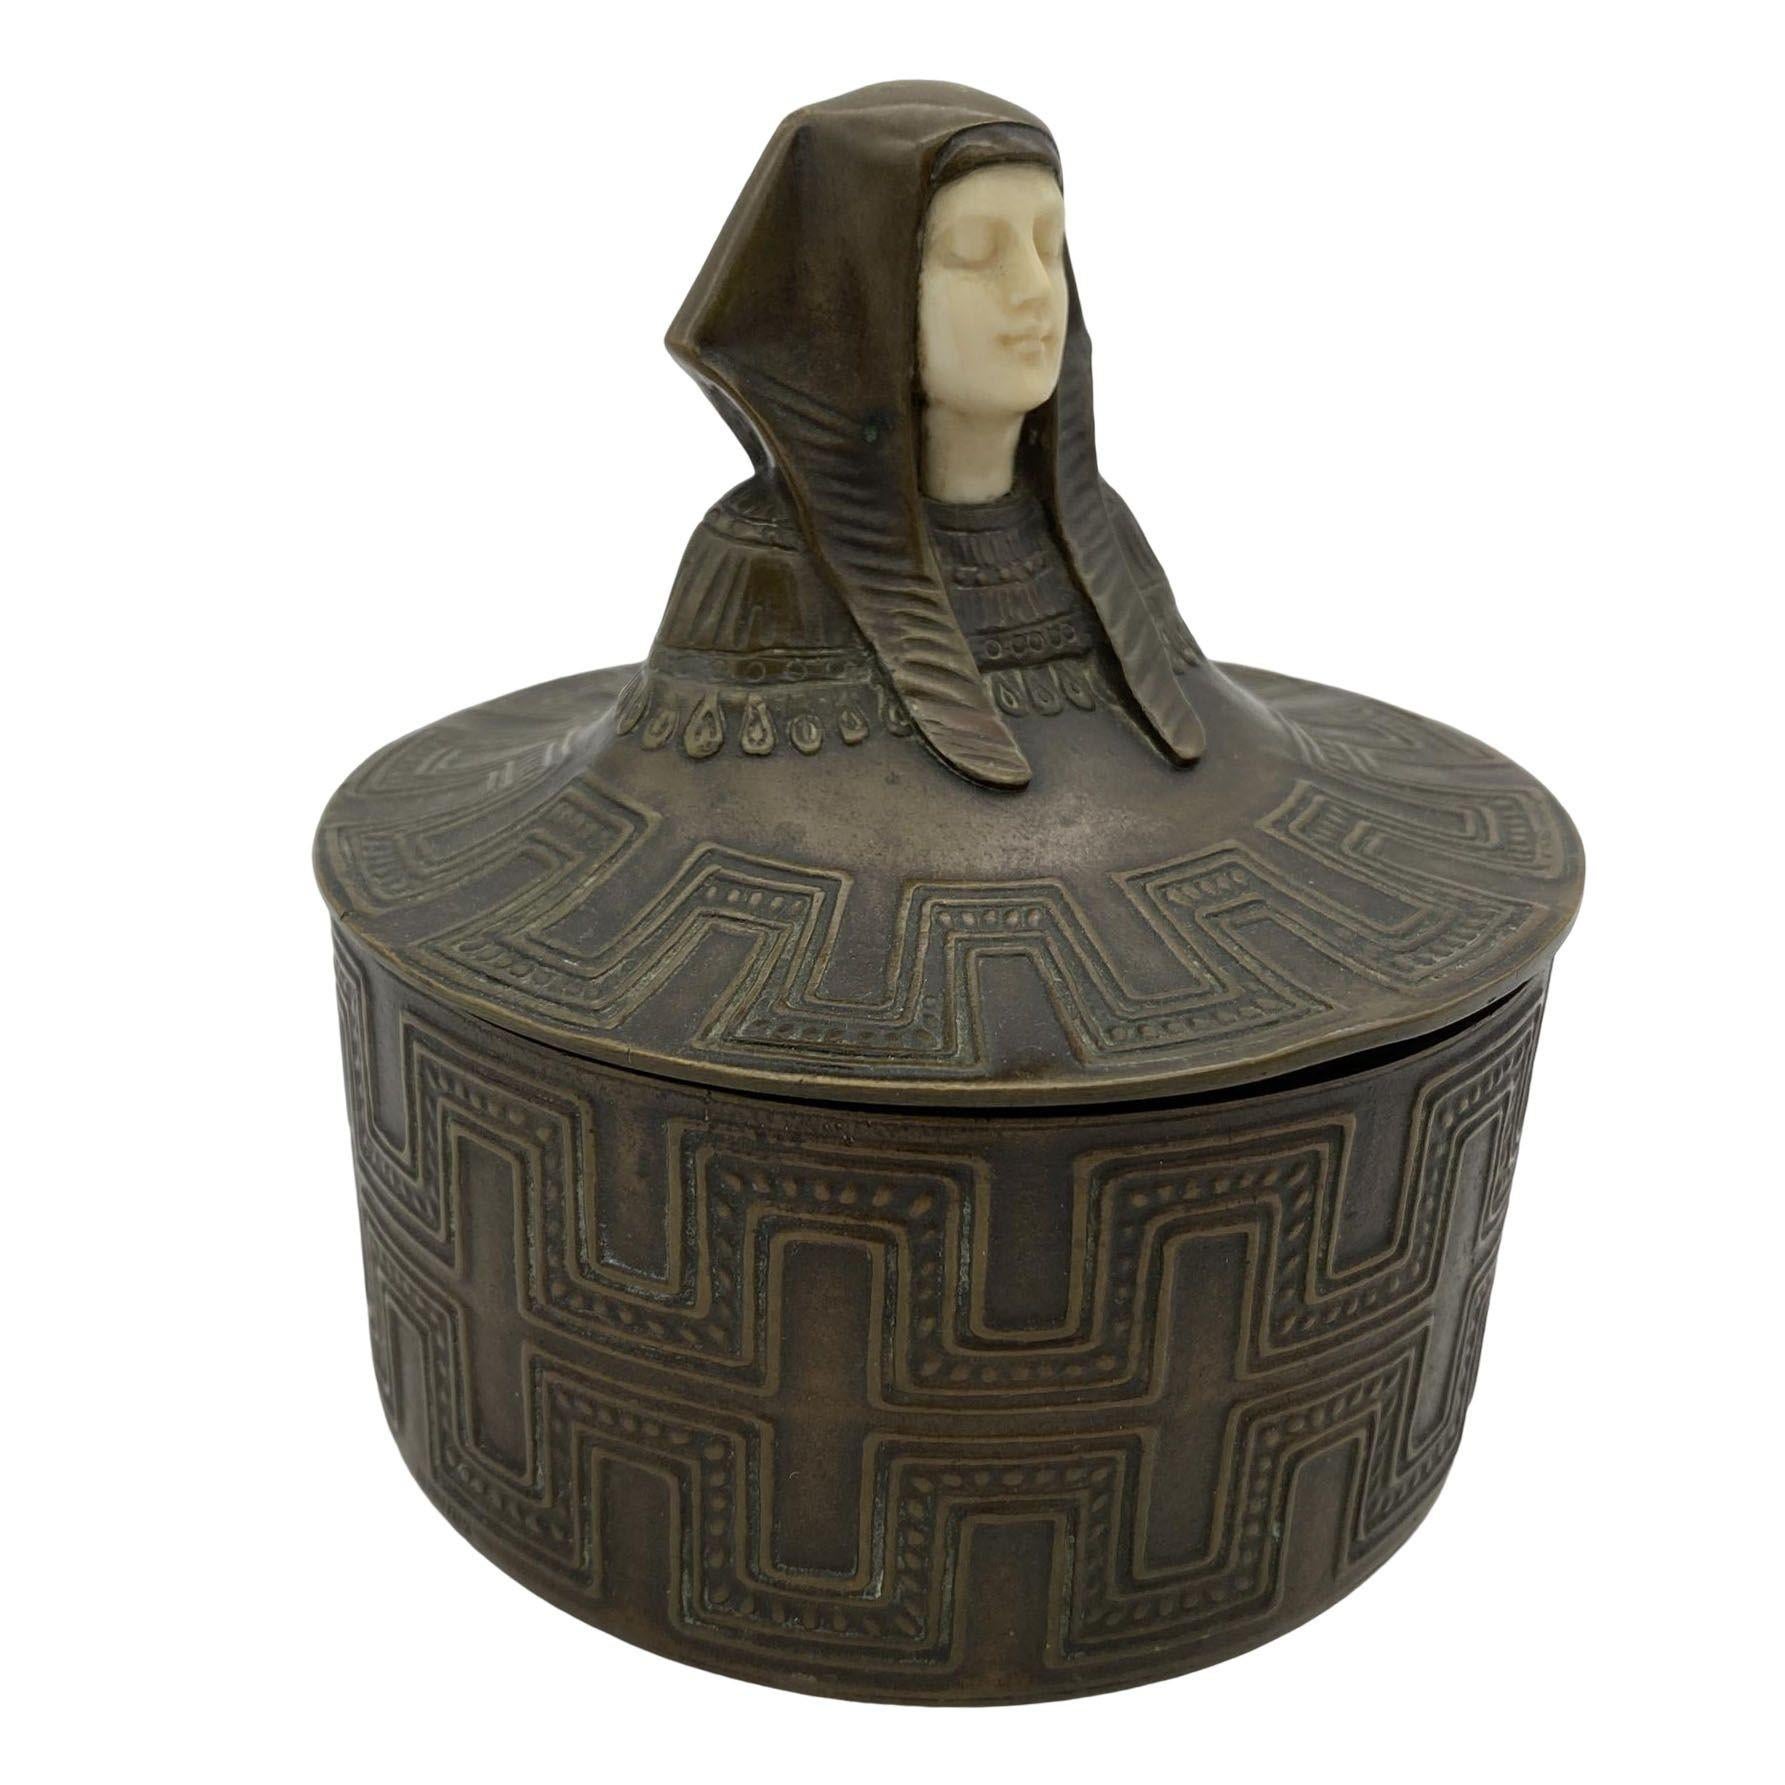 Plongez dans l'opulence de l'époque Art déco avec ce coffret en bronze coulé de style néo-égyptien. Orné d'une face en os méticuleusement sculptée, le couvercle amovible présente une figure royale de pharaon, qui se transforme en un relief